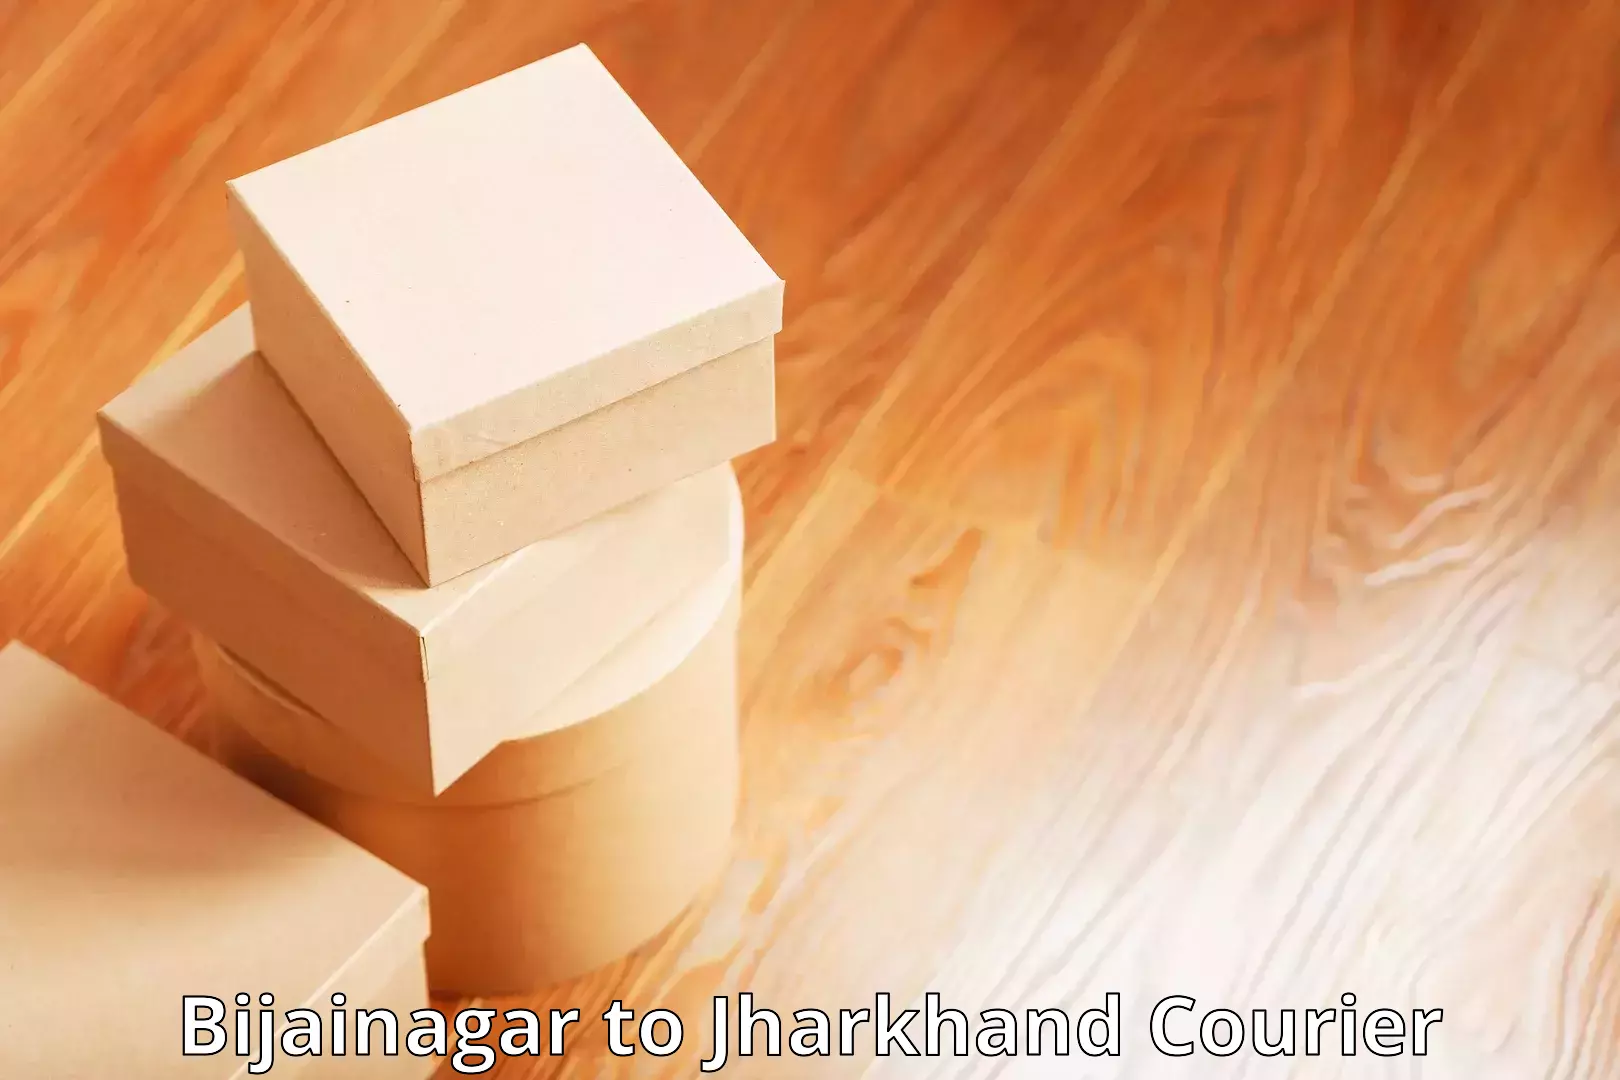 Secure shipping methods Bijainagar to Dhanbad